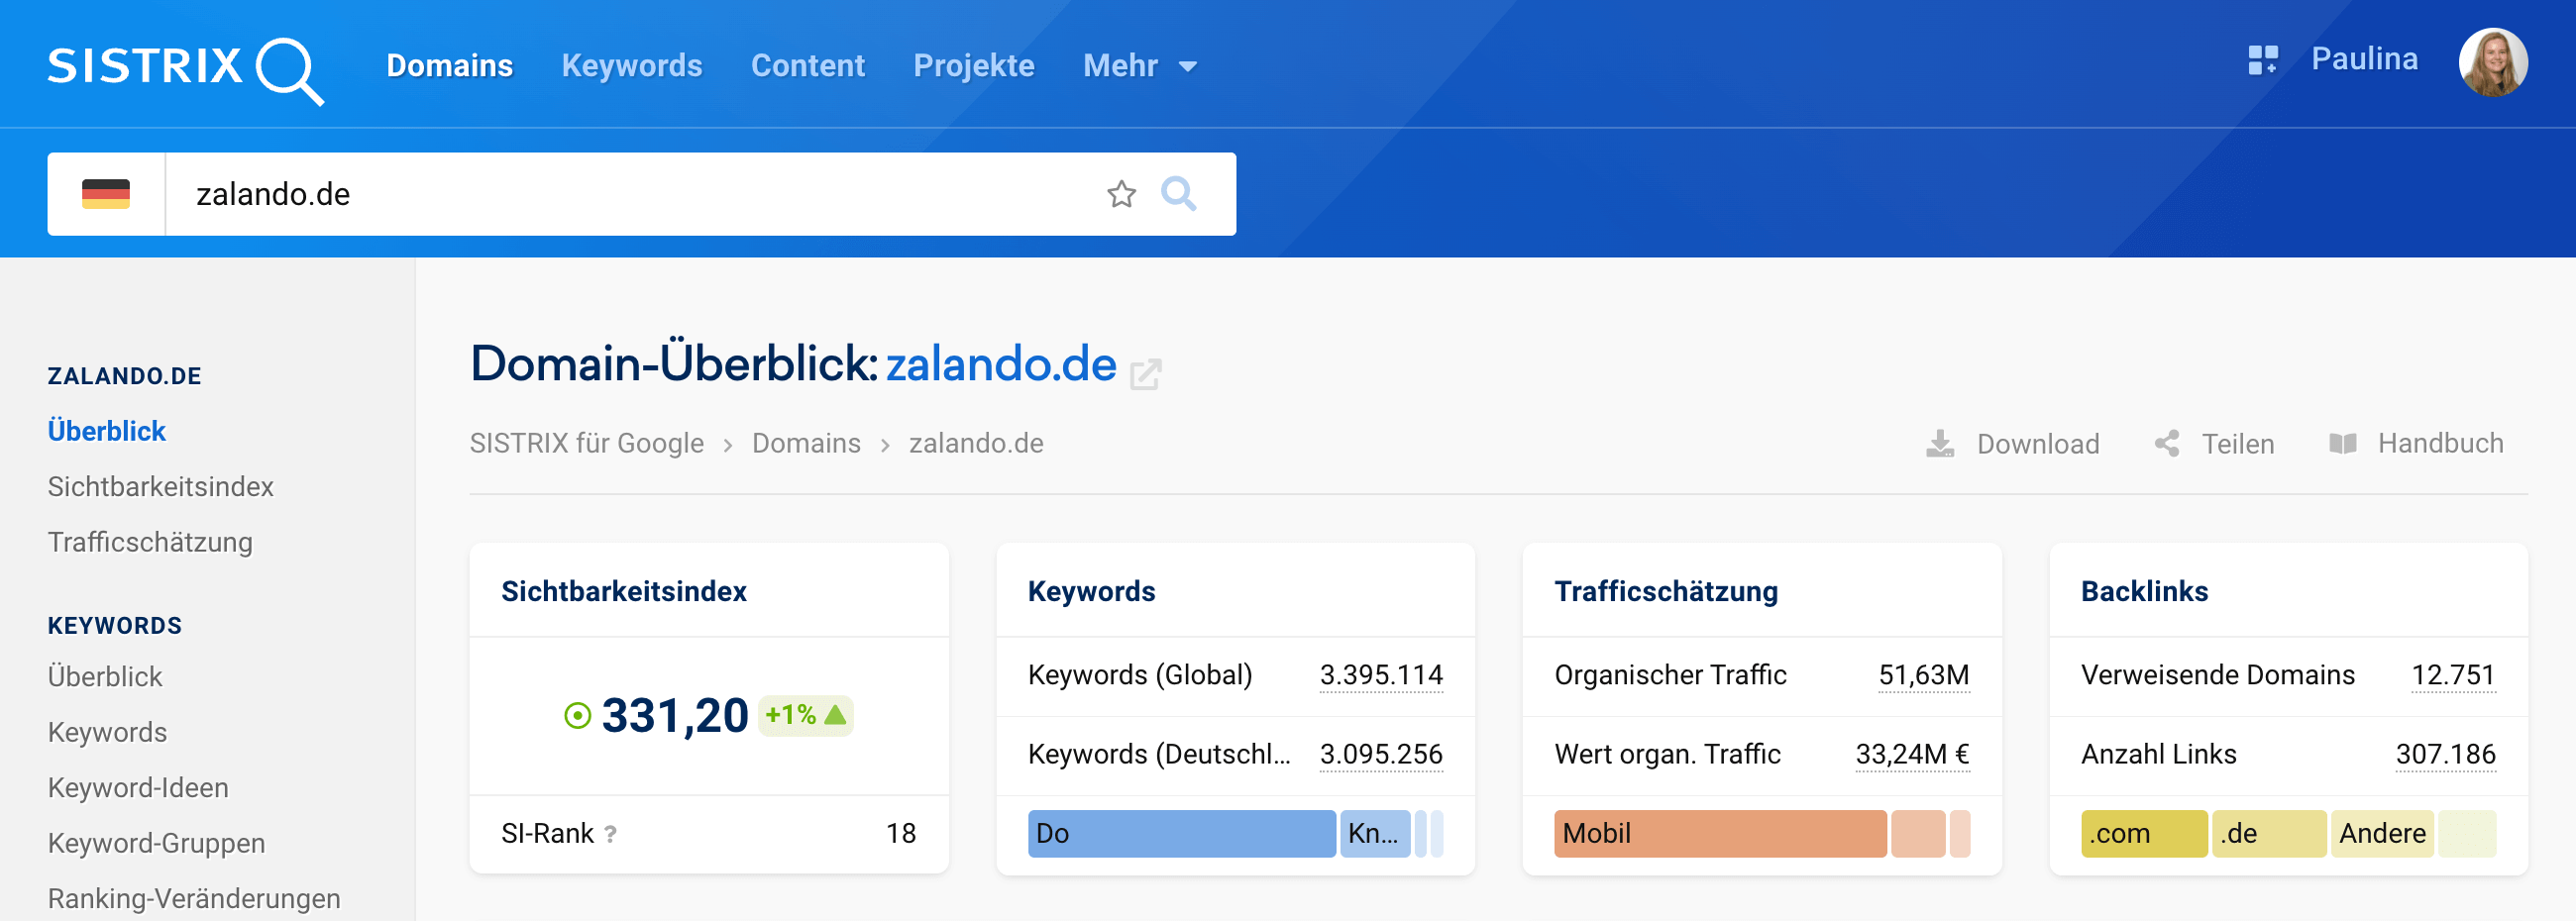 Der Domain-Überblick von zalando.de. Oben rechts befinden sich die Buttons zum Download, Teilen und Handbuch.